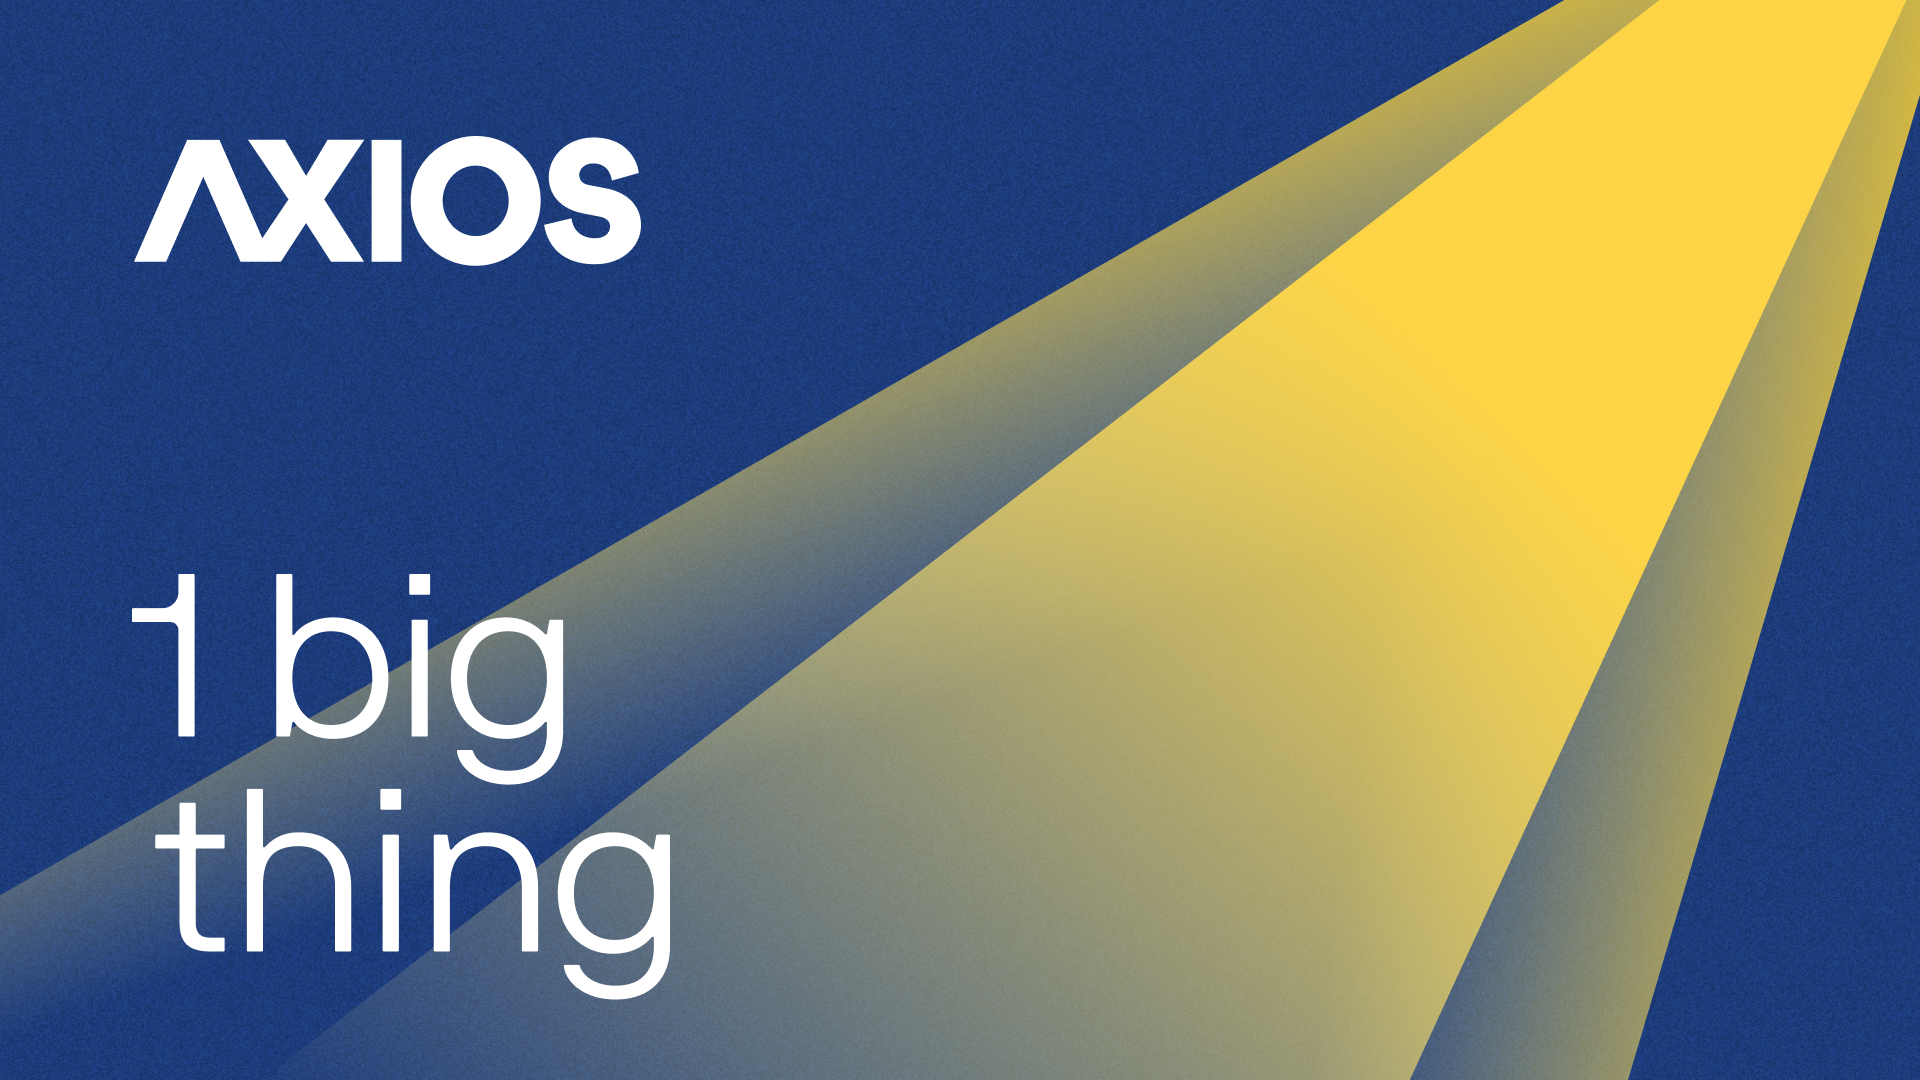 Axios 1 big thing logo with spotlight